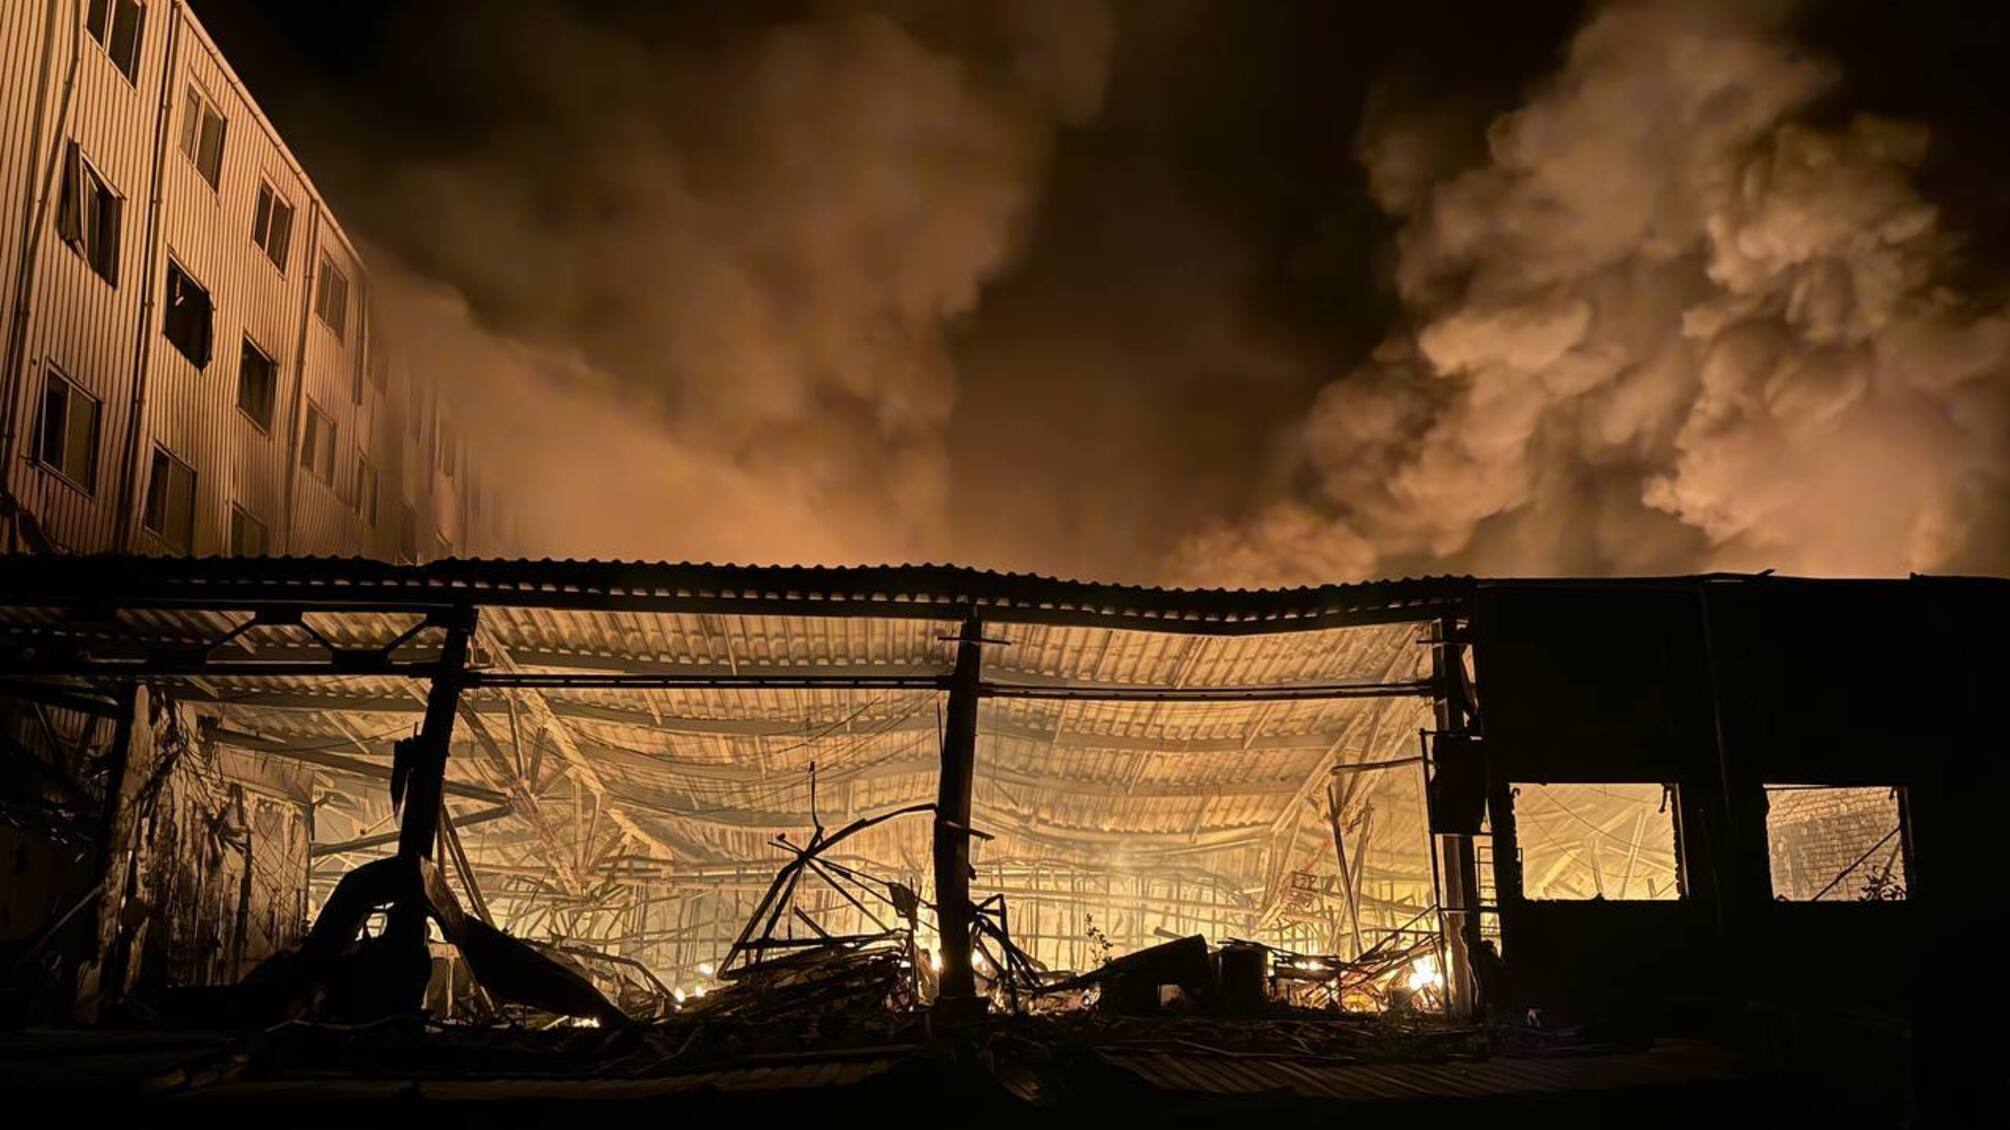 Російські окупанти вдарили по Одесі: постраждалі склади 'Нової пошти' та сортувальне депо (Фото)